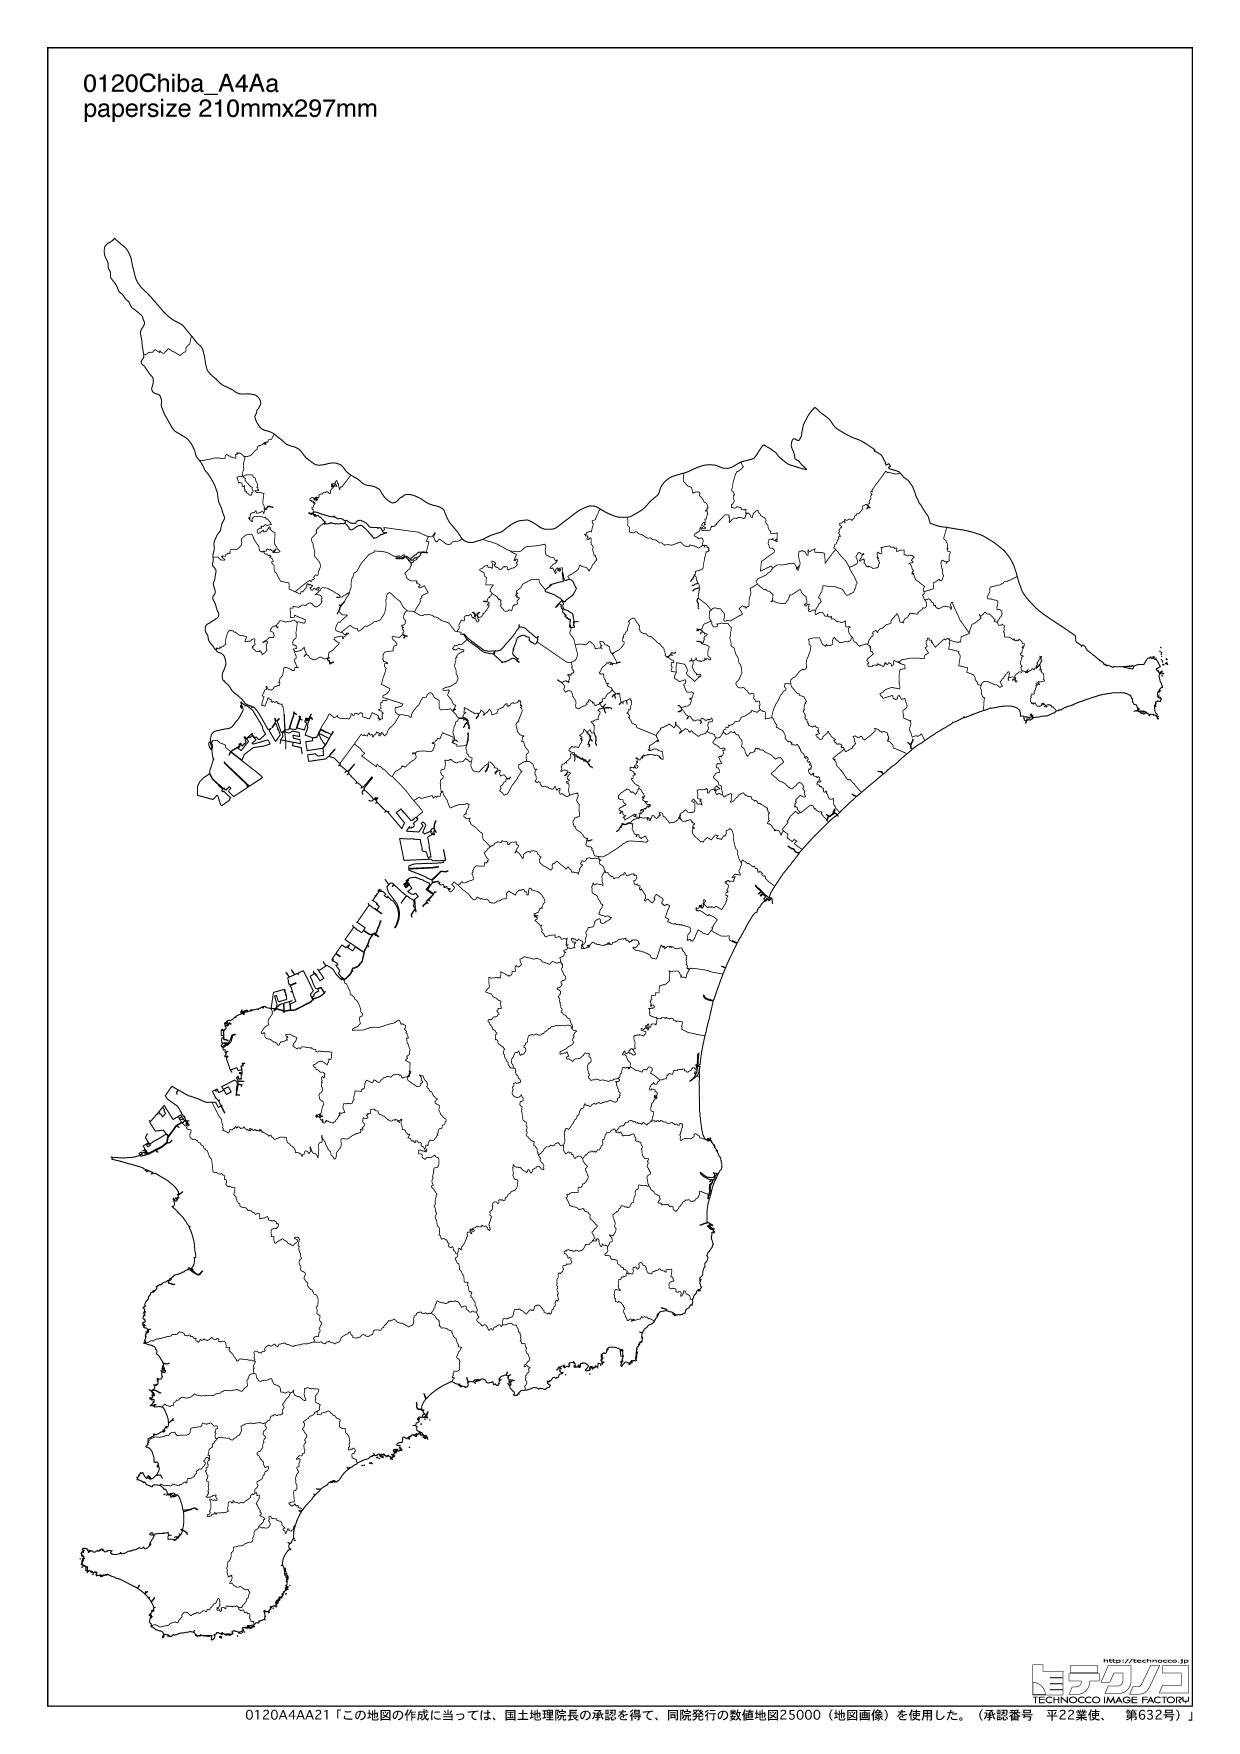 千葉県の白地図 都道府県コード12